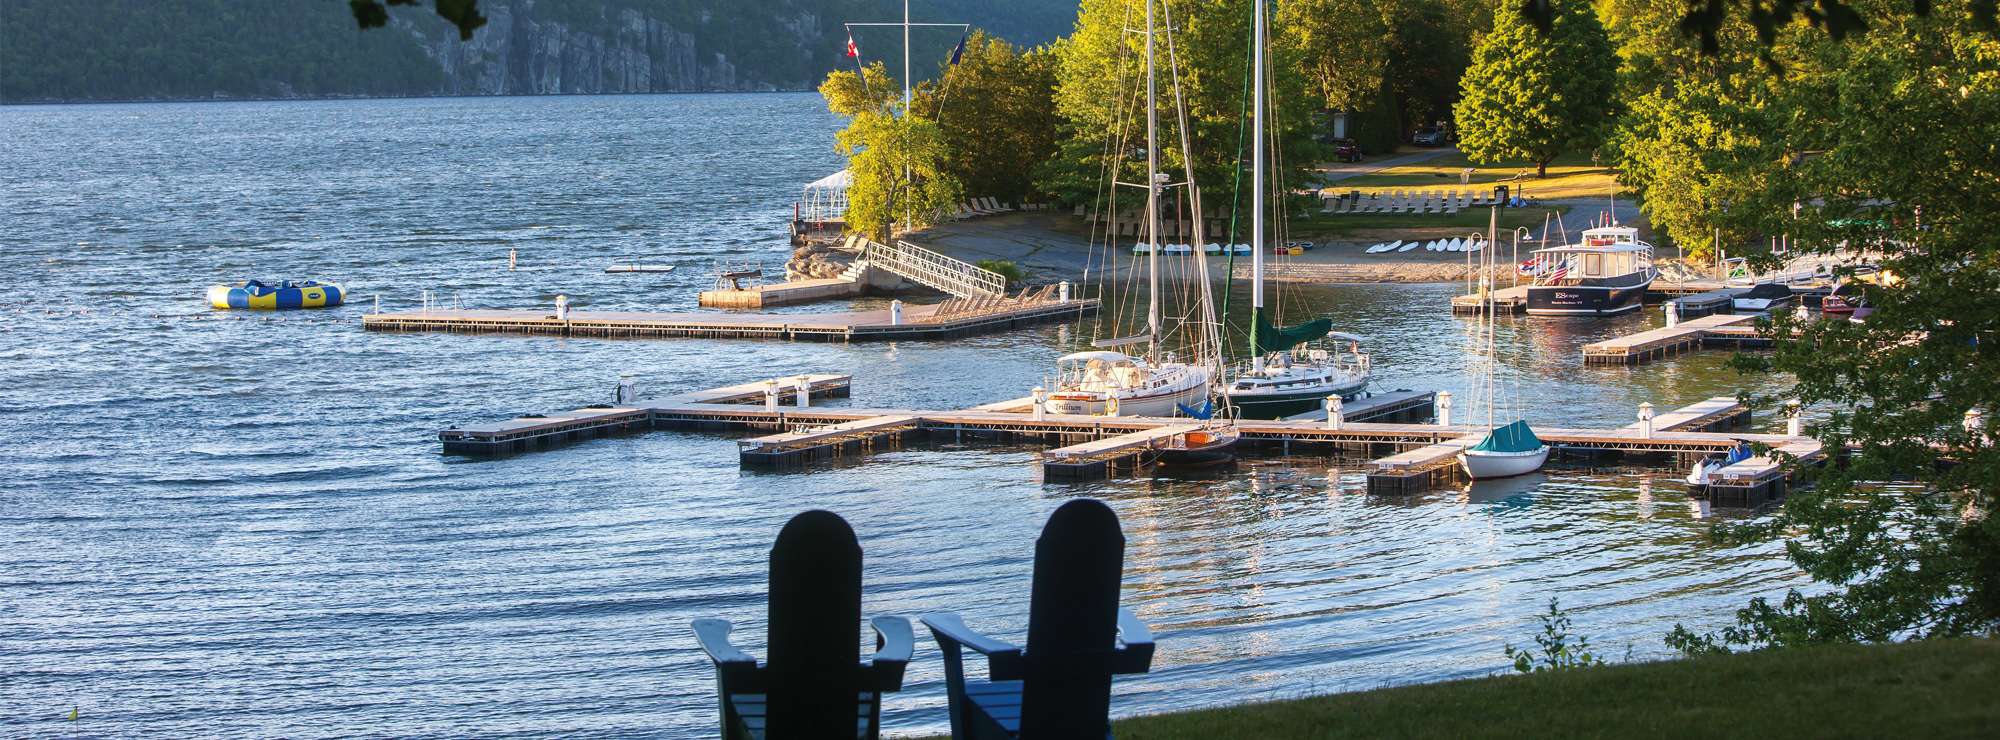 Basin Harbor - Boat Club Morning Lake View